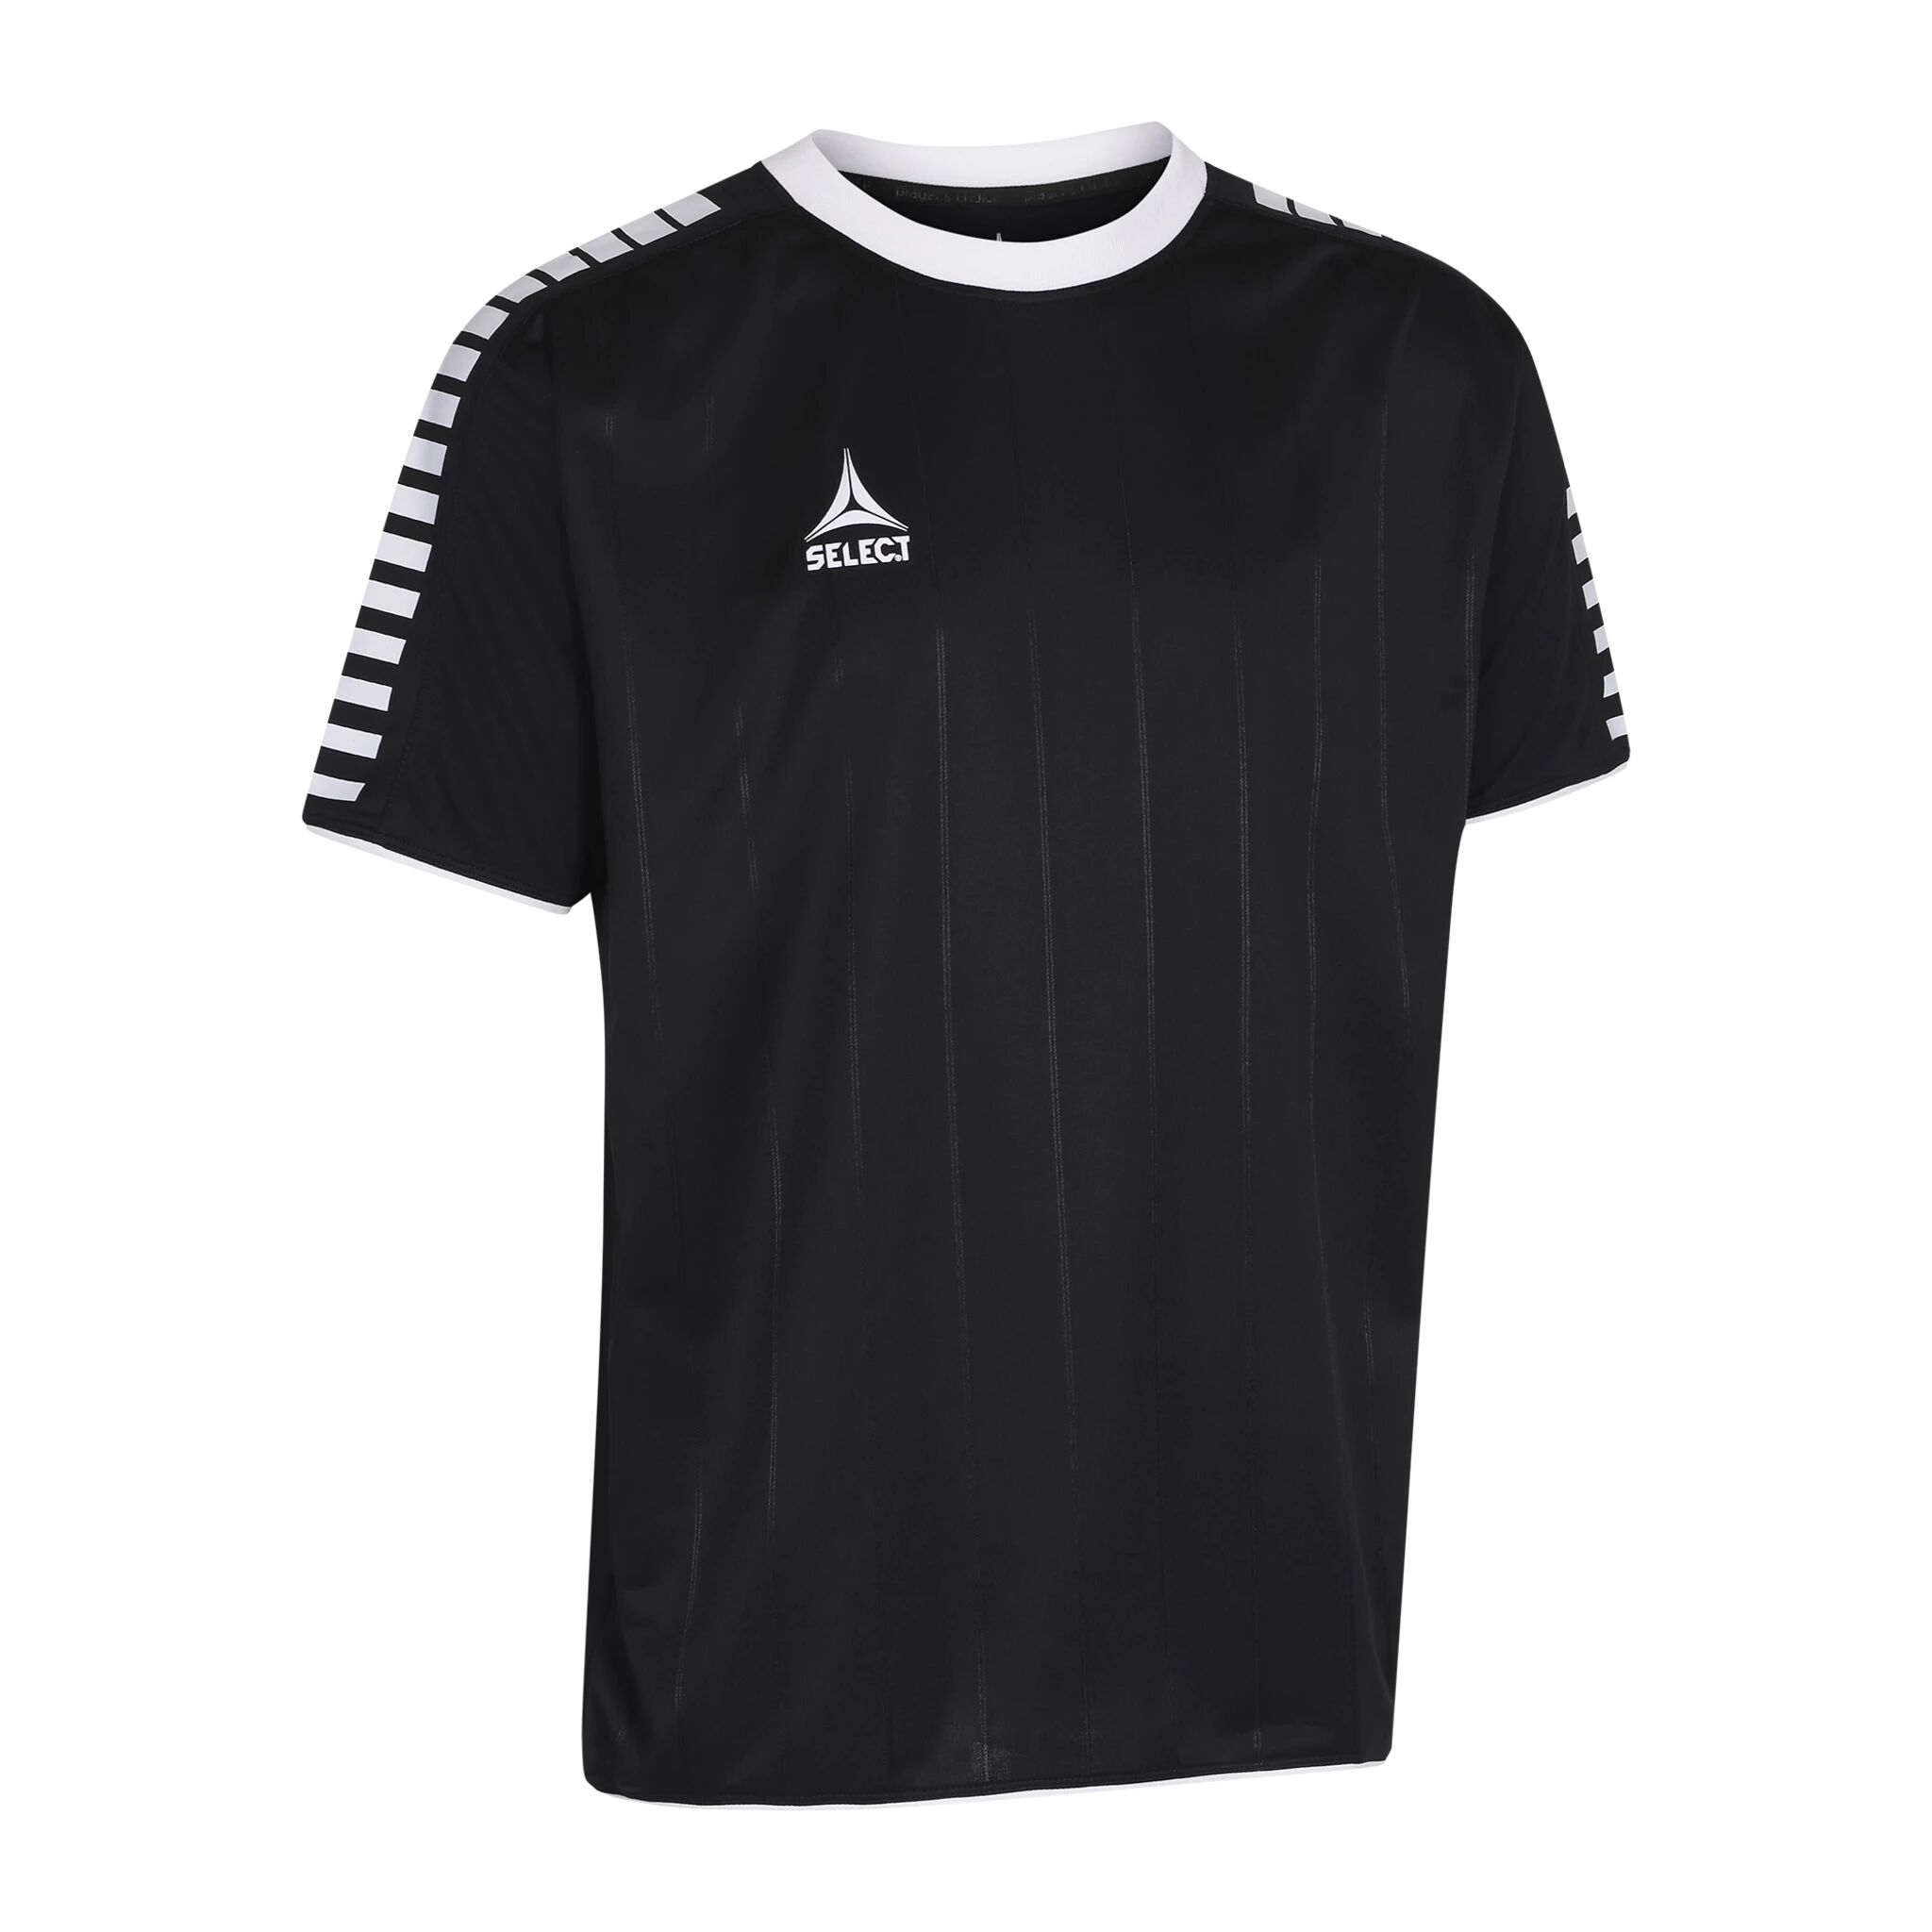 Select Player shirt S/S Argentina, fotballtrøye senior 116 BLACK